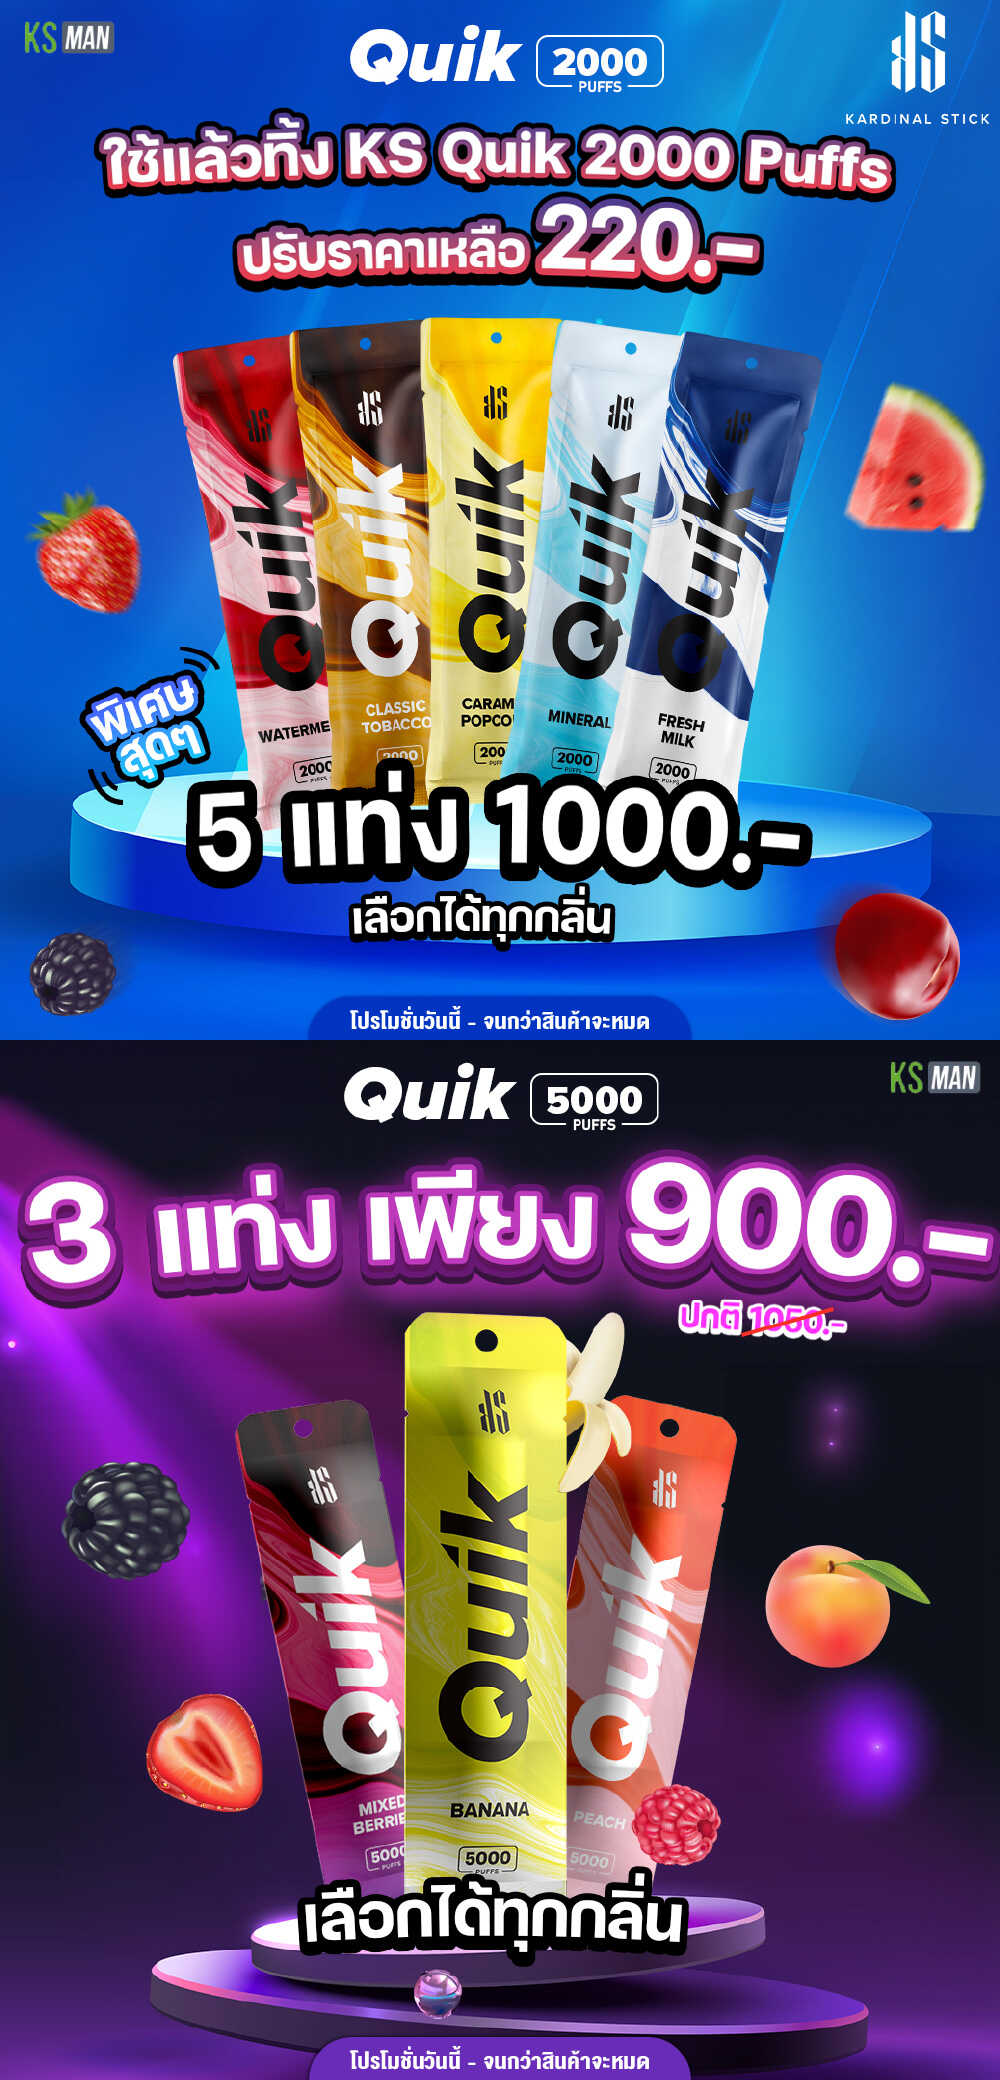 promotion ks quik 2000 5 buy 1000 and ks quik 5000 3 buy 900